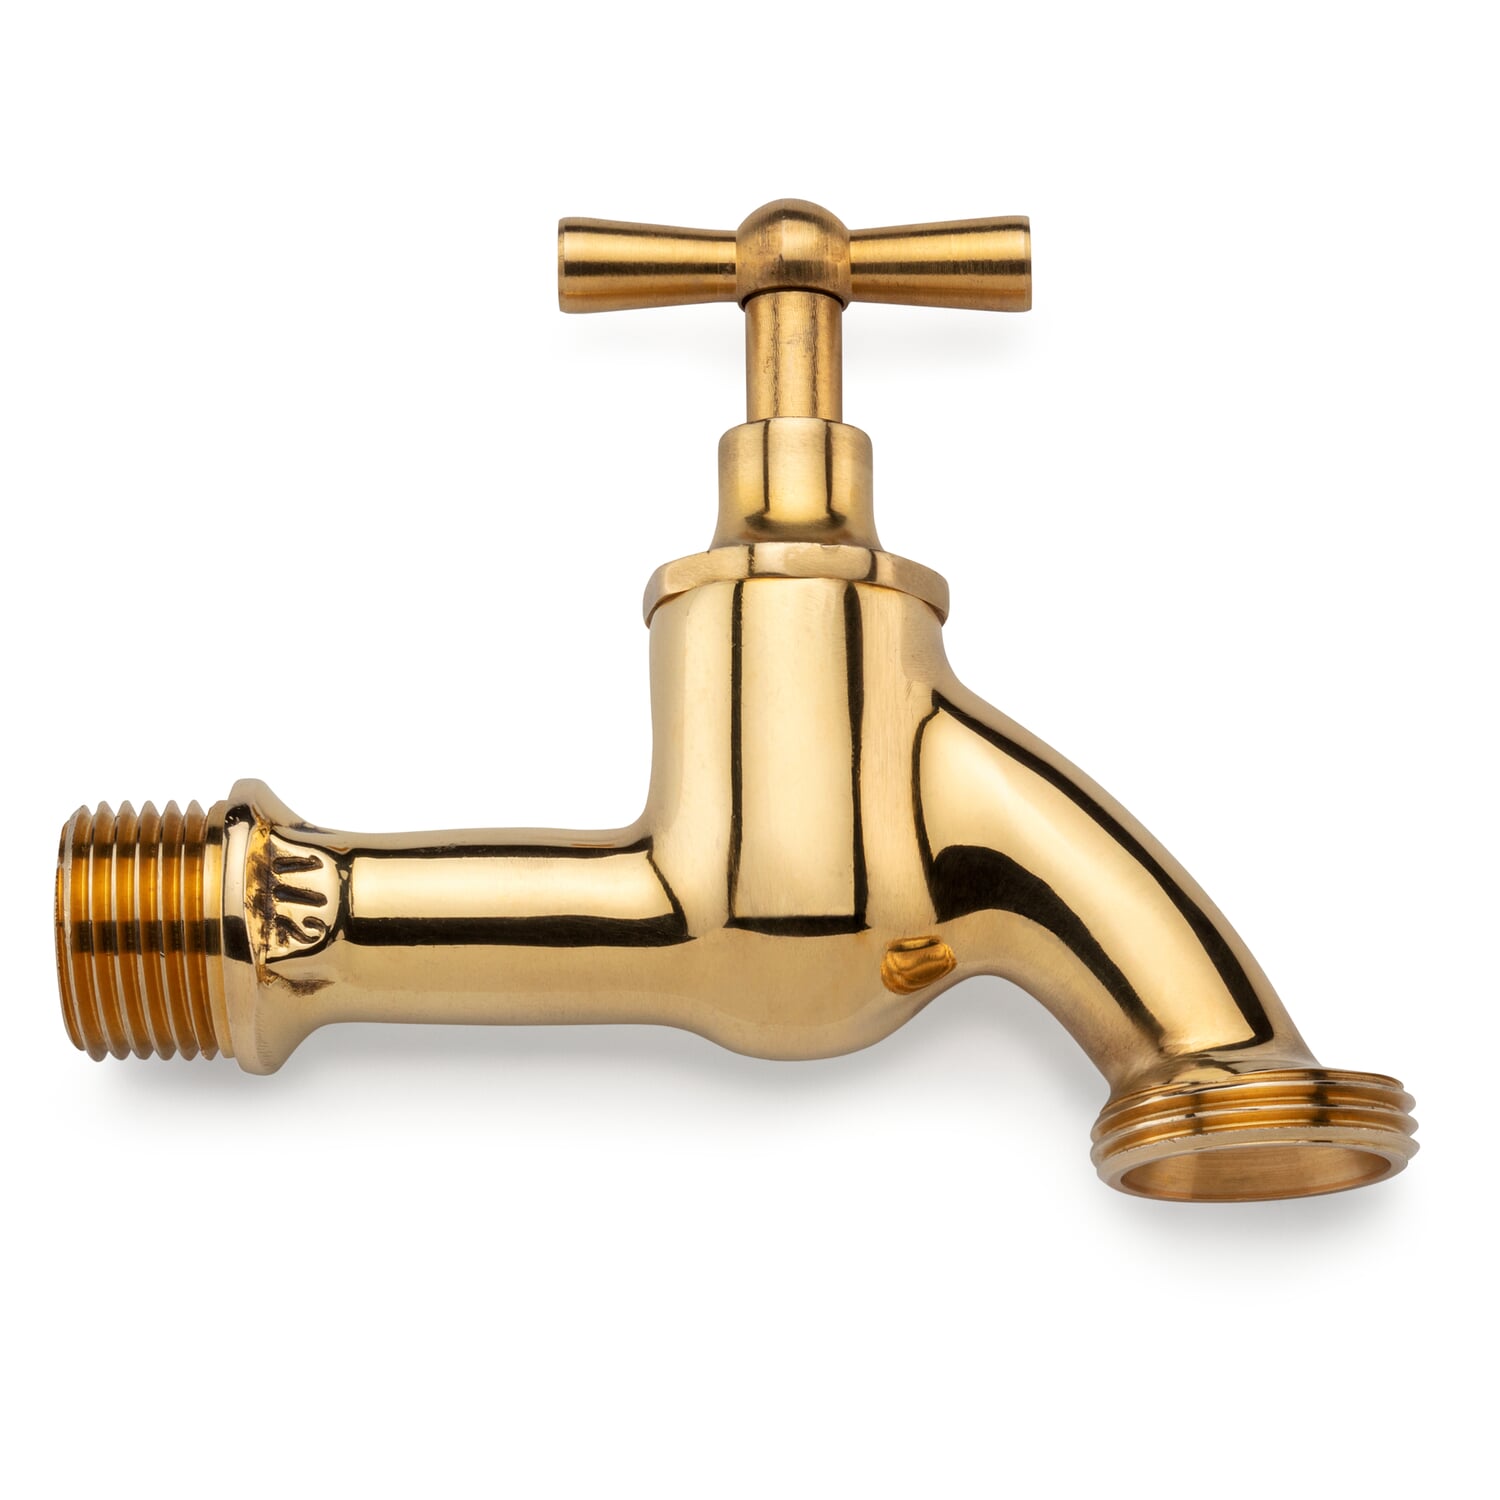 https://assets.manufactum.de/p/078/078529/78529_01.jpg/faucet-brass.jpg?profile=pdsmain_1500